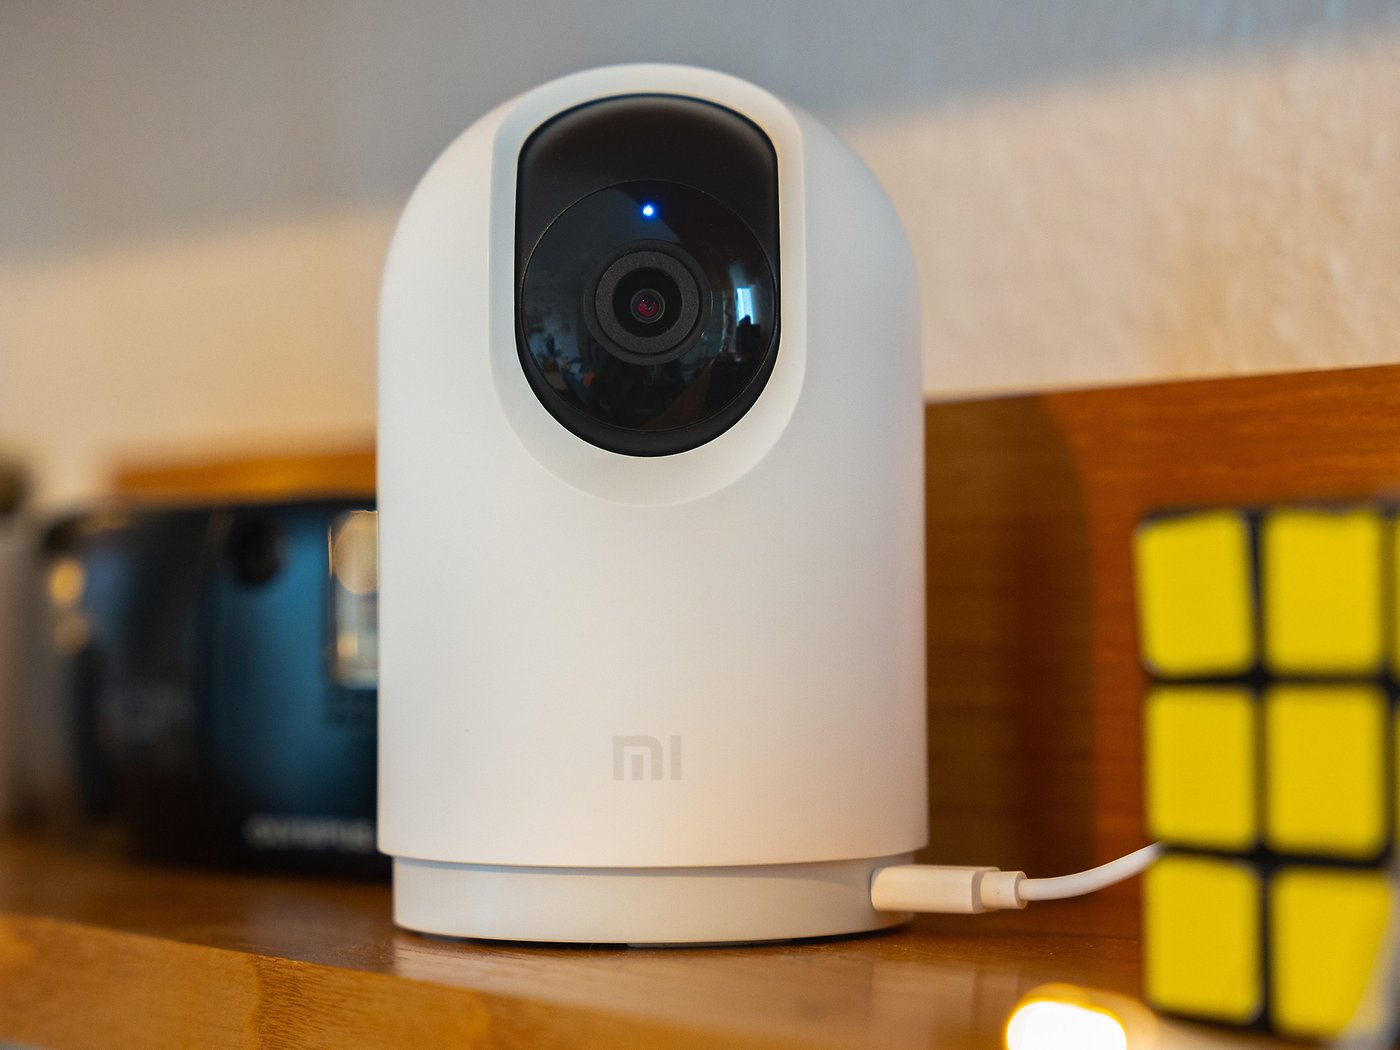 Xiaomi Mi 360º Home Security Camera 2K